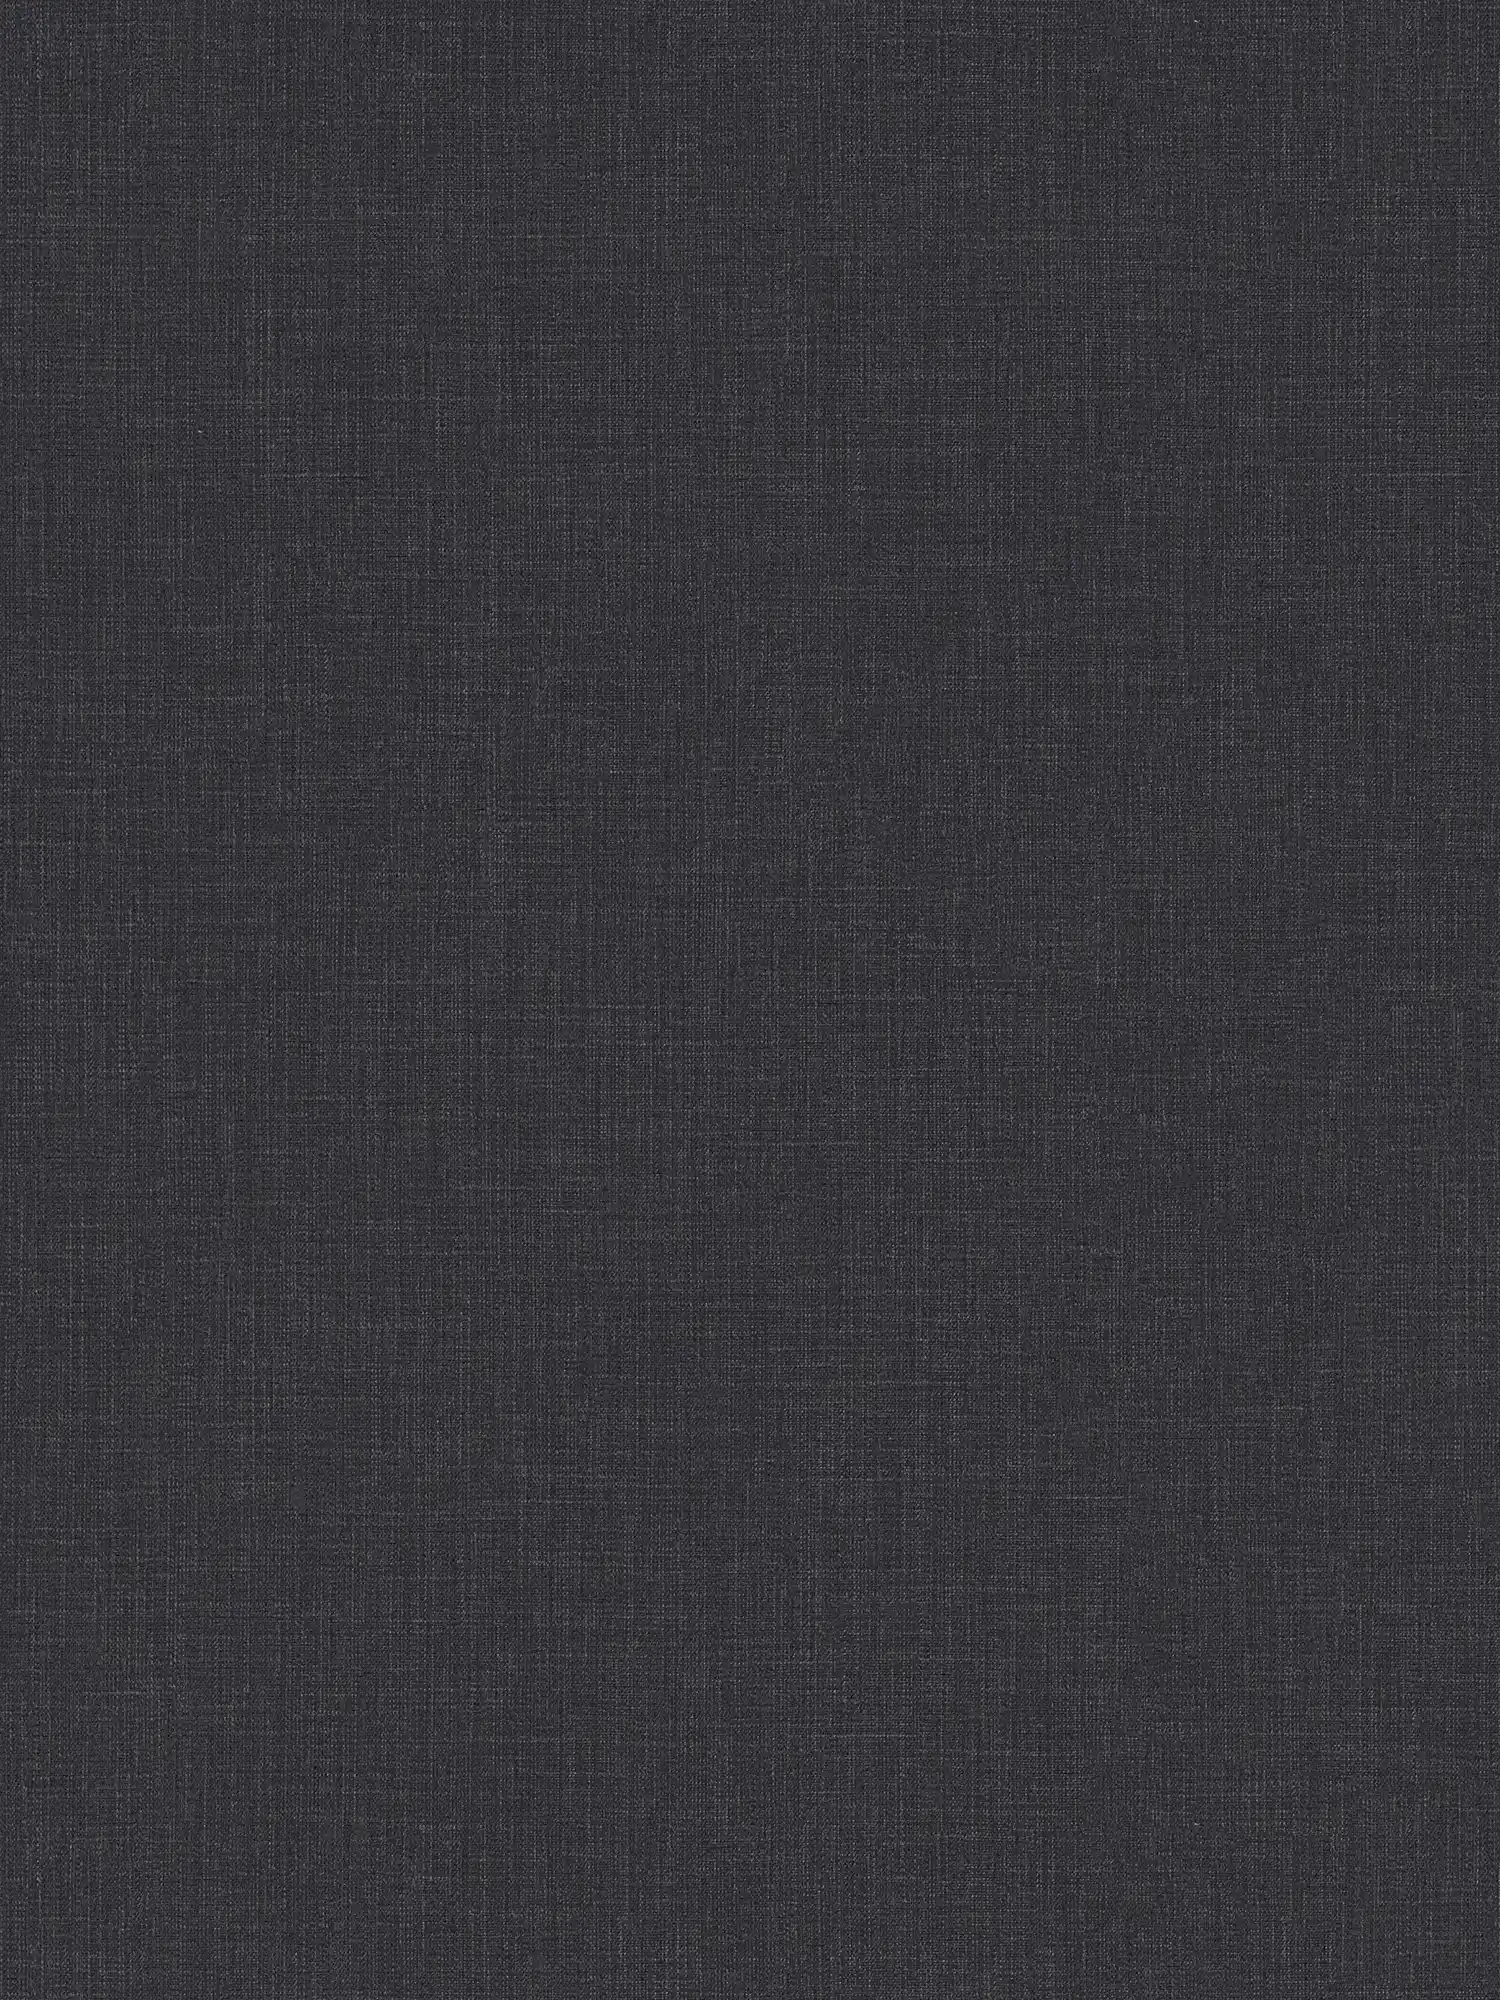 Vliesbehang gevlekt met textiellook - blauw, grijs, wit
